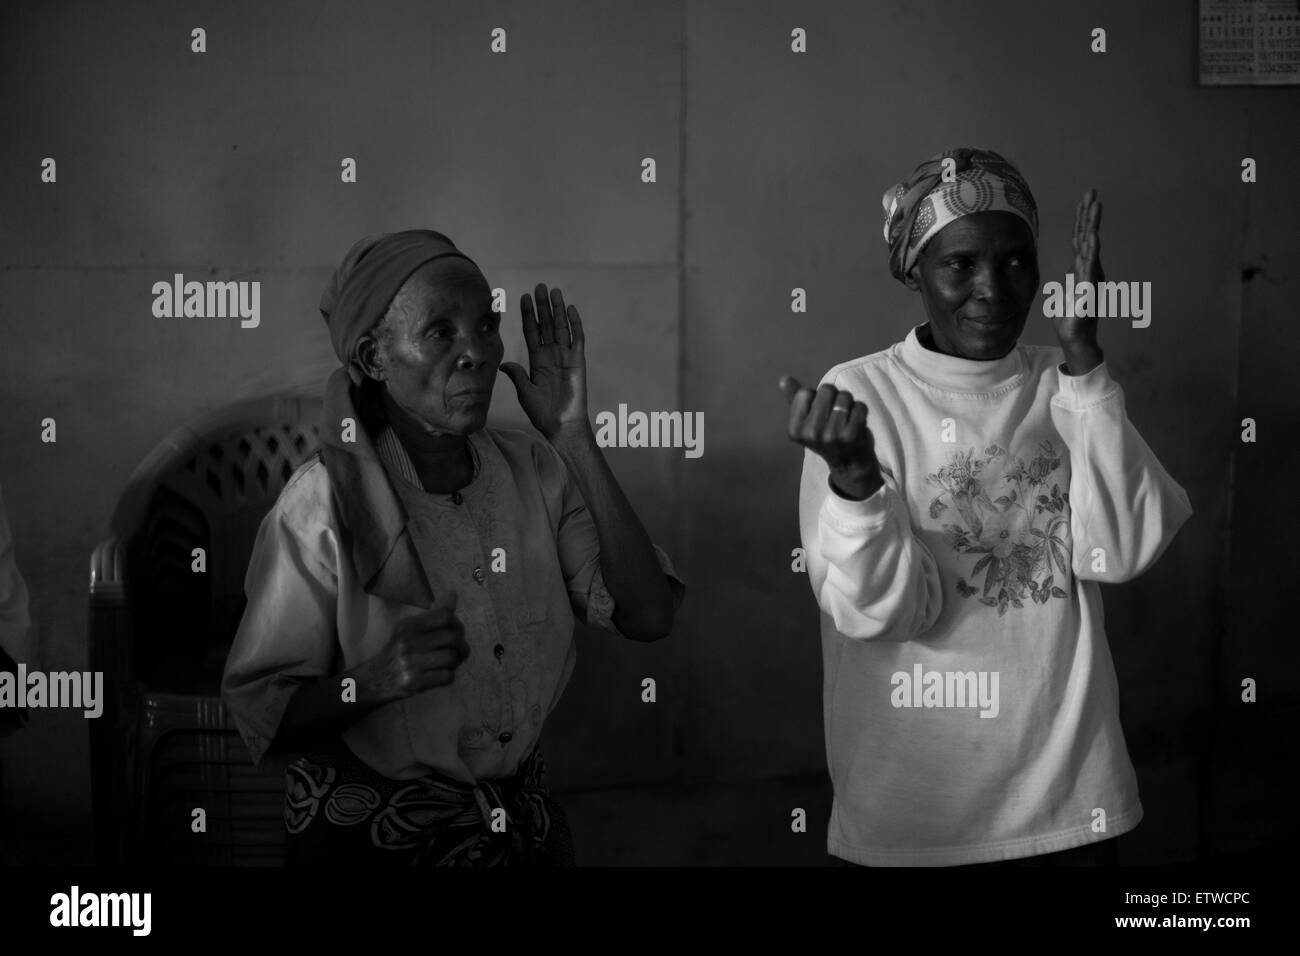 70 años Wairimu Gachenga practicar técnicas de defensa personal con otras abuelas el 30 de mayo de 2013 en el barrio de tugurios de Korogocho en Nairobi, Kenya. Una vez a la semana, un grupo de abuelas de la zona se reúnen a practicar las técnicas de defensa después de que uno de ellos fueron violadas en 2007. La violación en la mujer de edad avanzada han aumentado en Kenya como la gente cree que las abuelas tienen un menor riesgo de infección por VIH en comparación con las mujeres jóvenes. KAREL PRINSLOO. Foto de stock